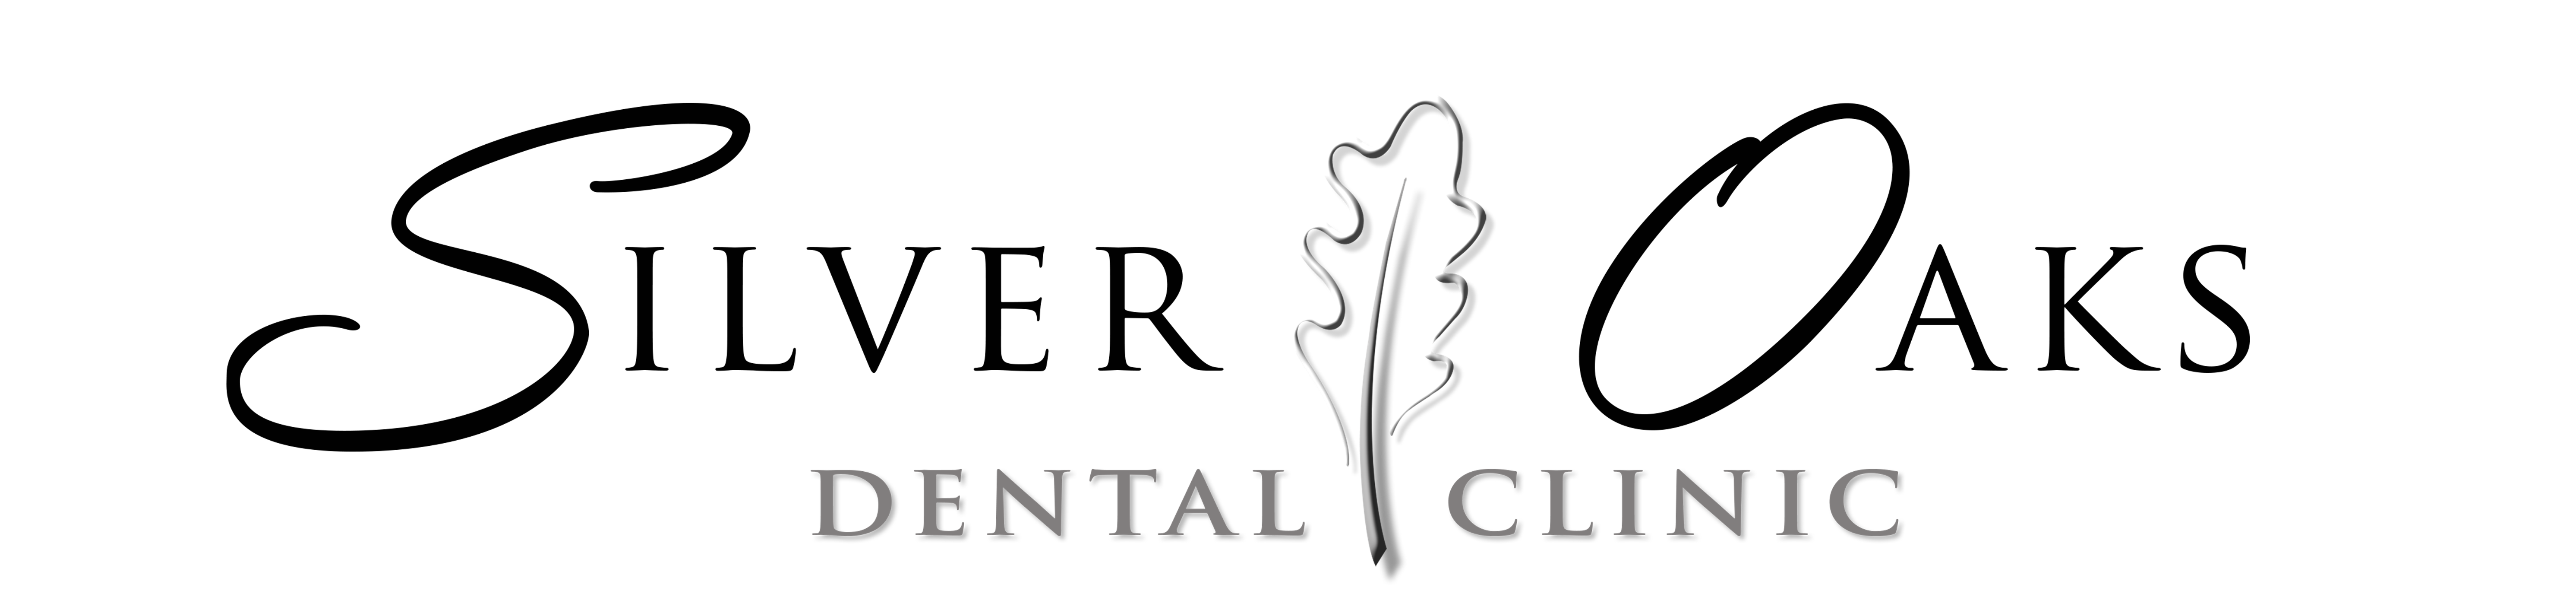 Silver Oaks Dental Clinic - Logo